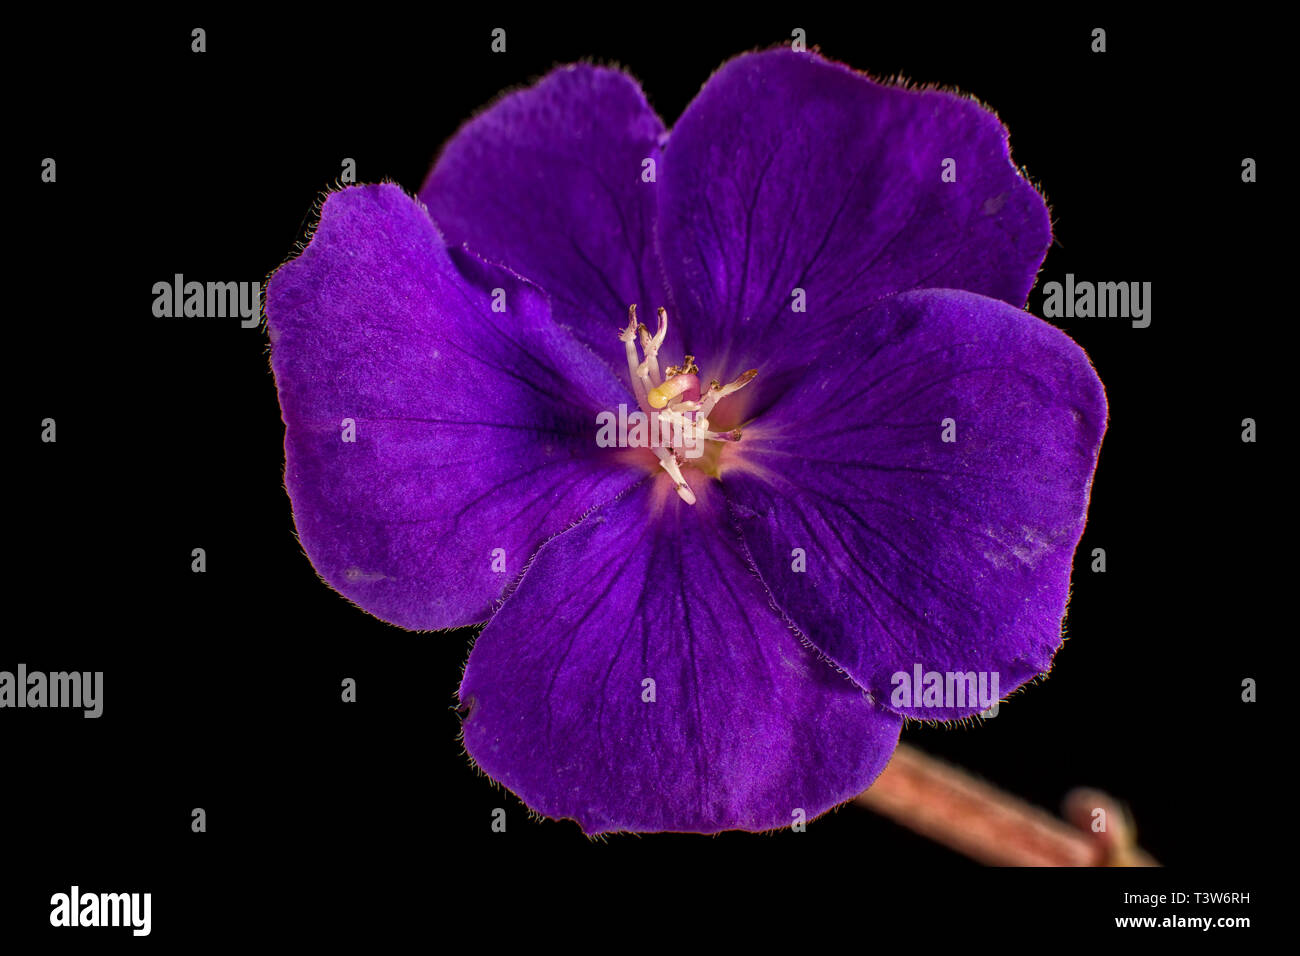 glorybush flower macro Stock Photo